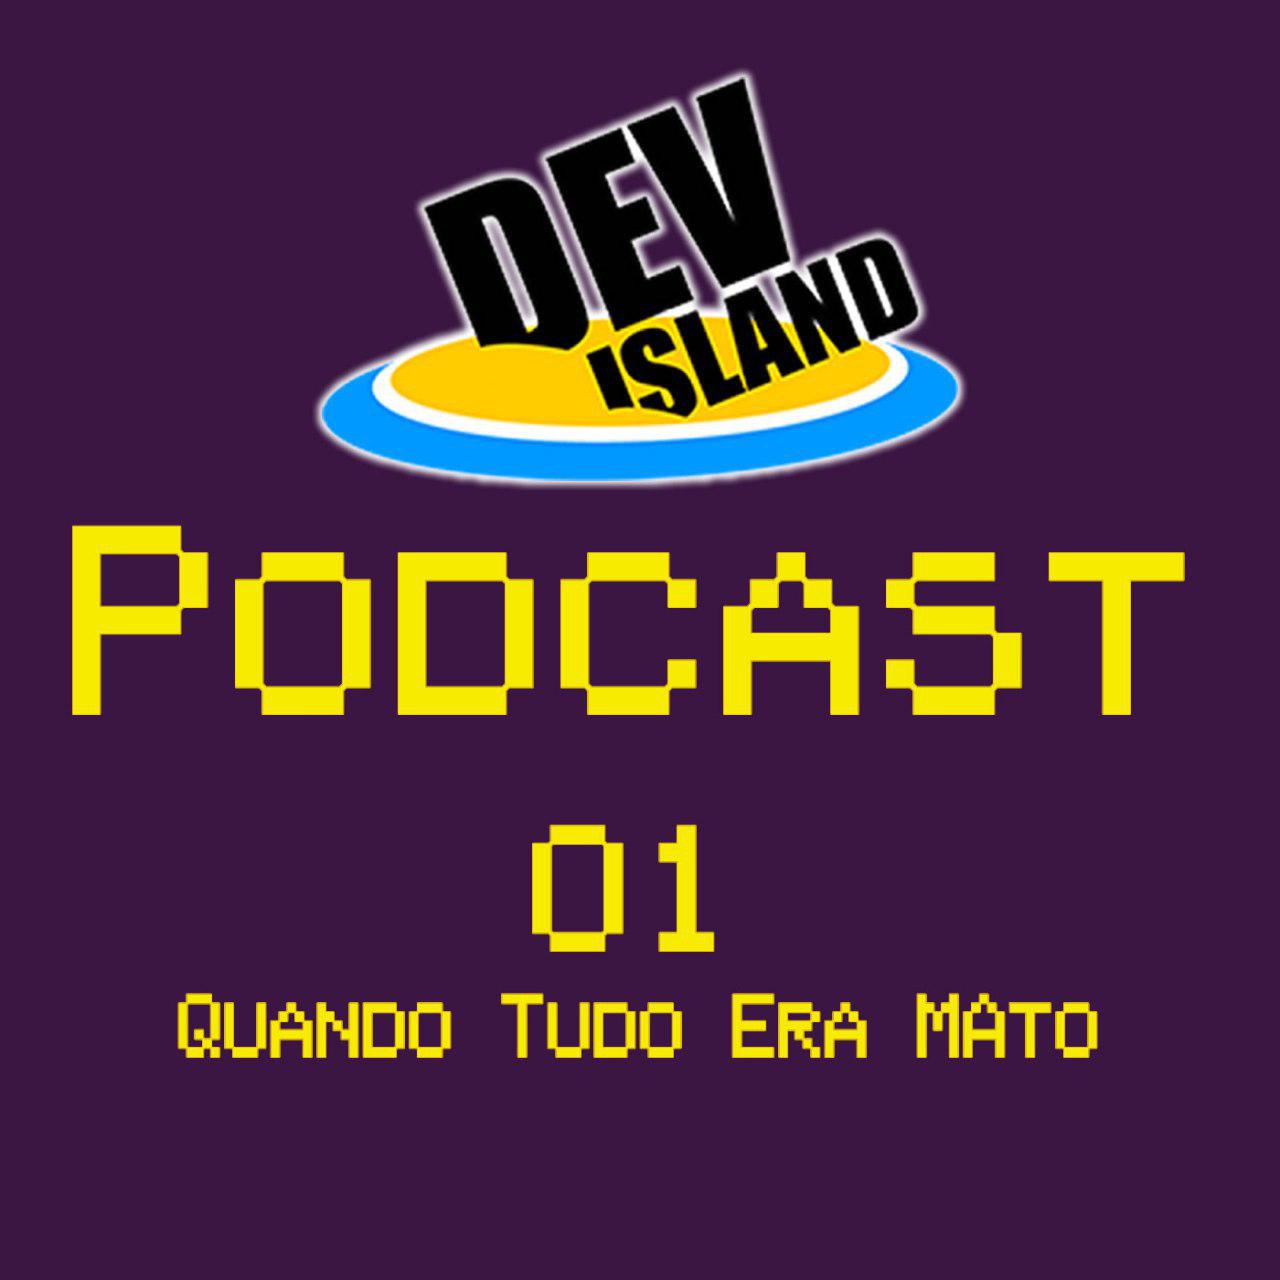 Episódio 1 do DevIsland Podcast - Quando tudo era mato